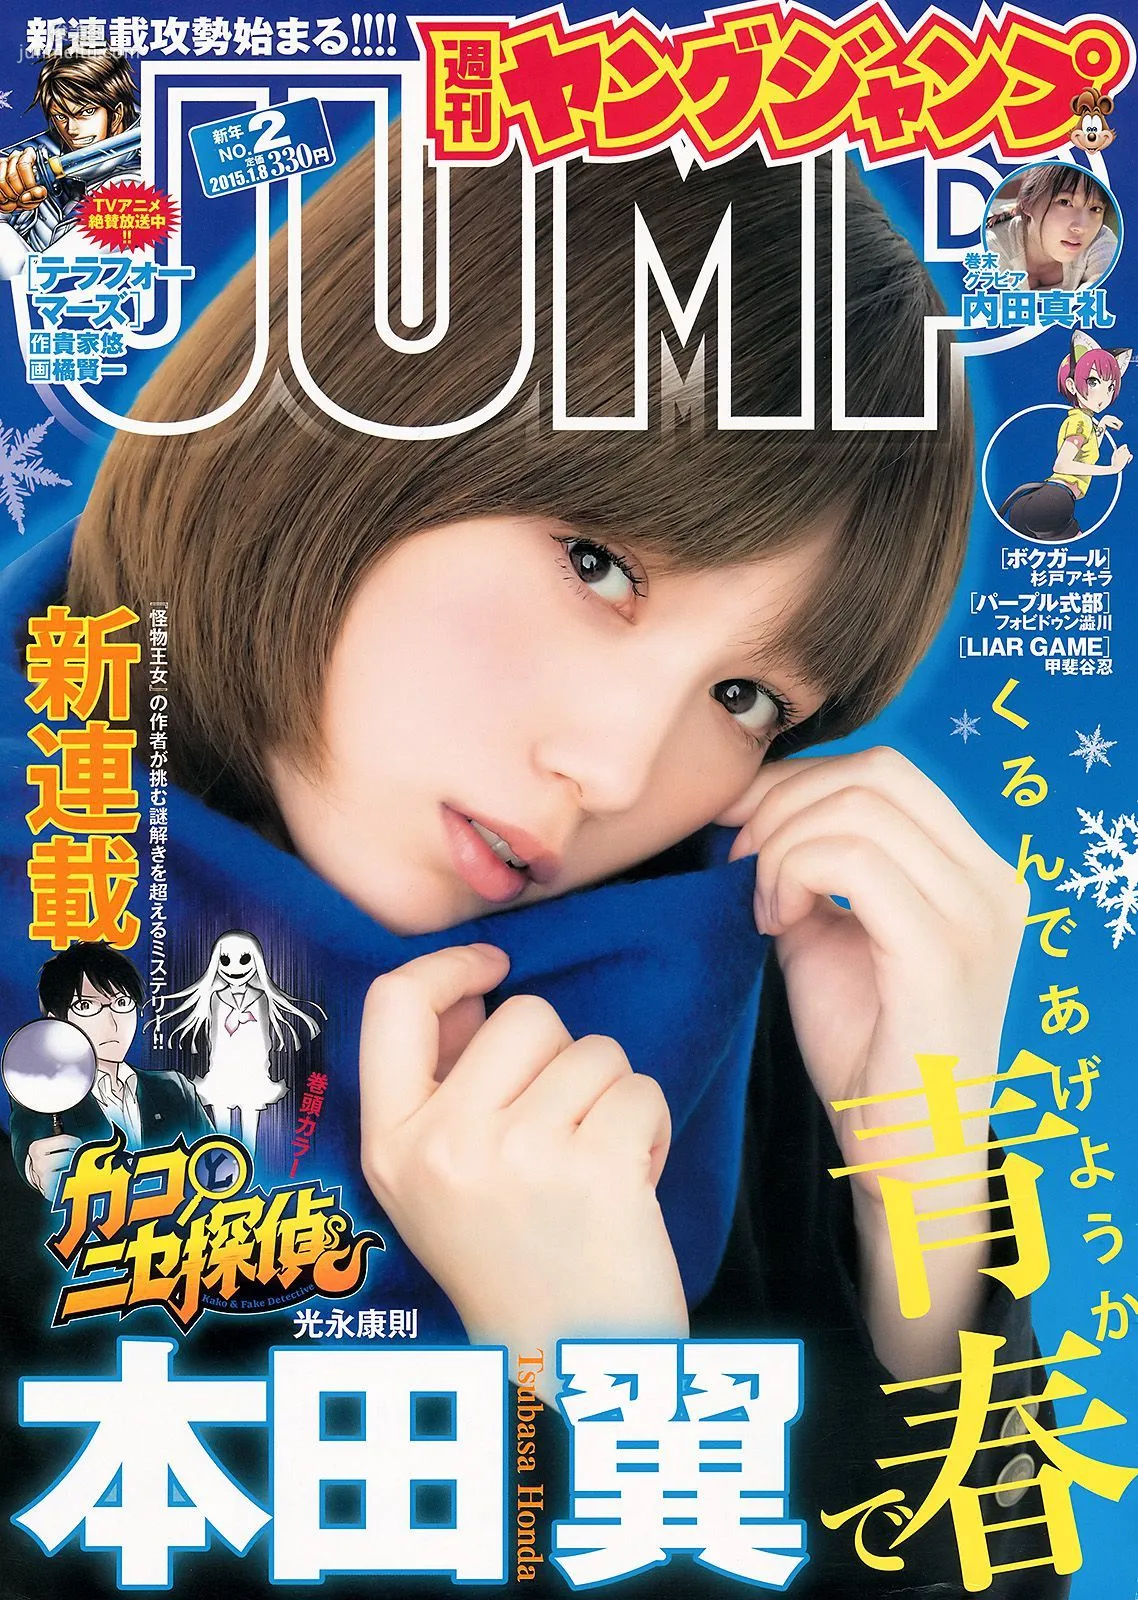 本田翼 内田真礼 [Weekly Young Jump] 2015年No.02 写真杂志1